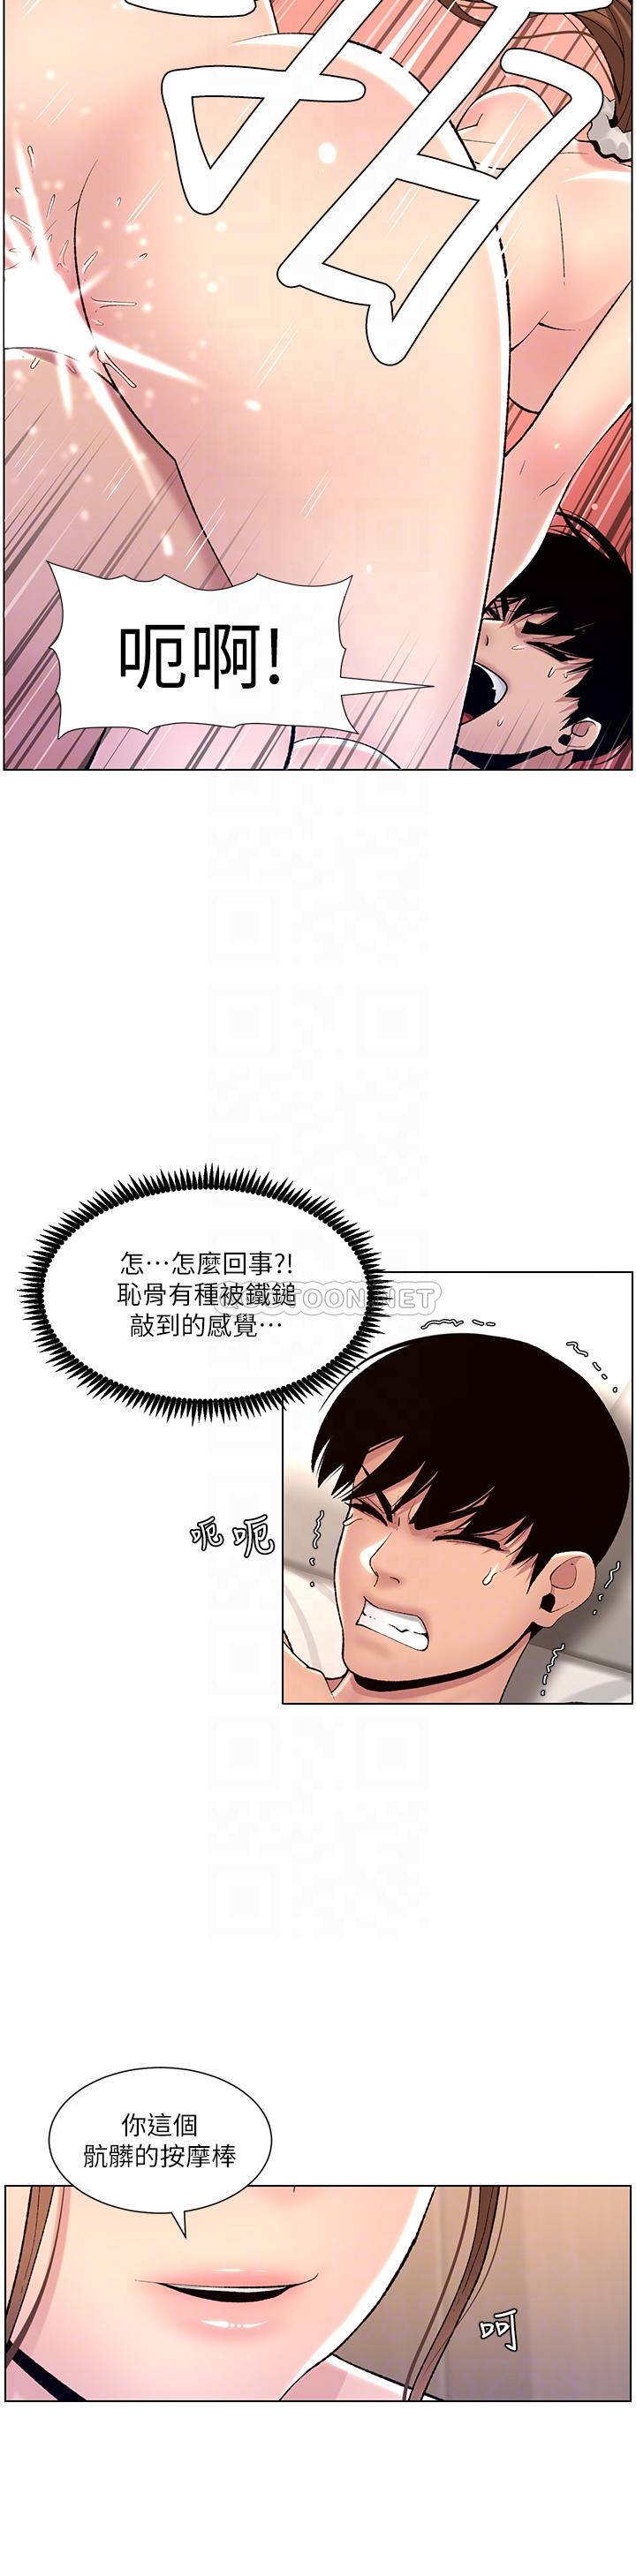 韩国污漫画 帝王App 第16话 你要当我的按摩棒吗? 16